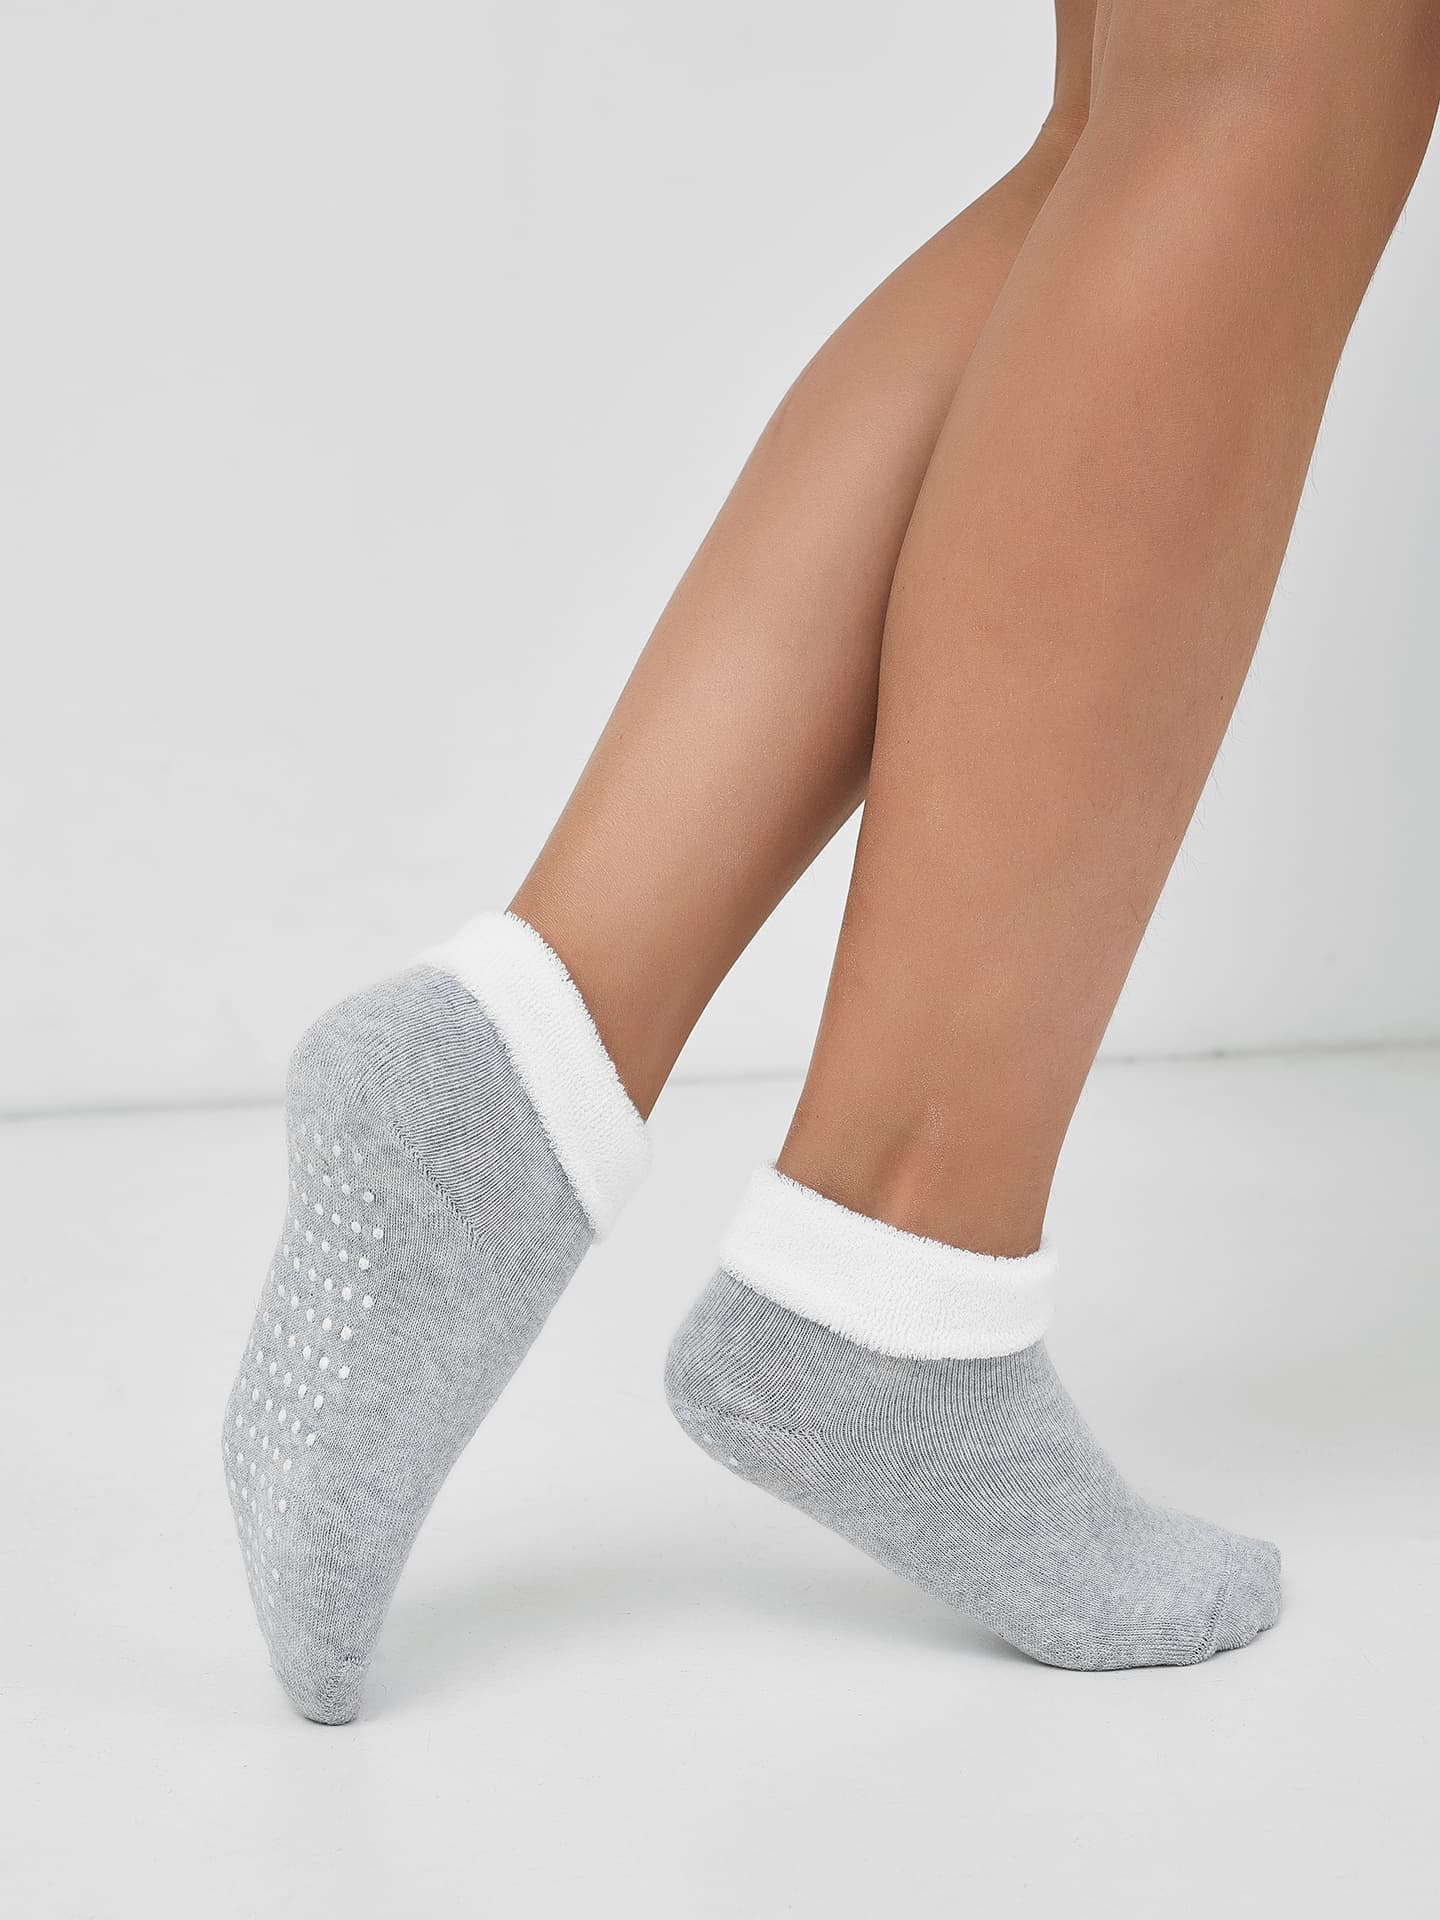 Детские укороченные носки с силиконовым покрытием на стопе